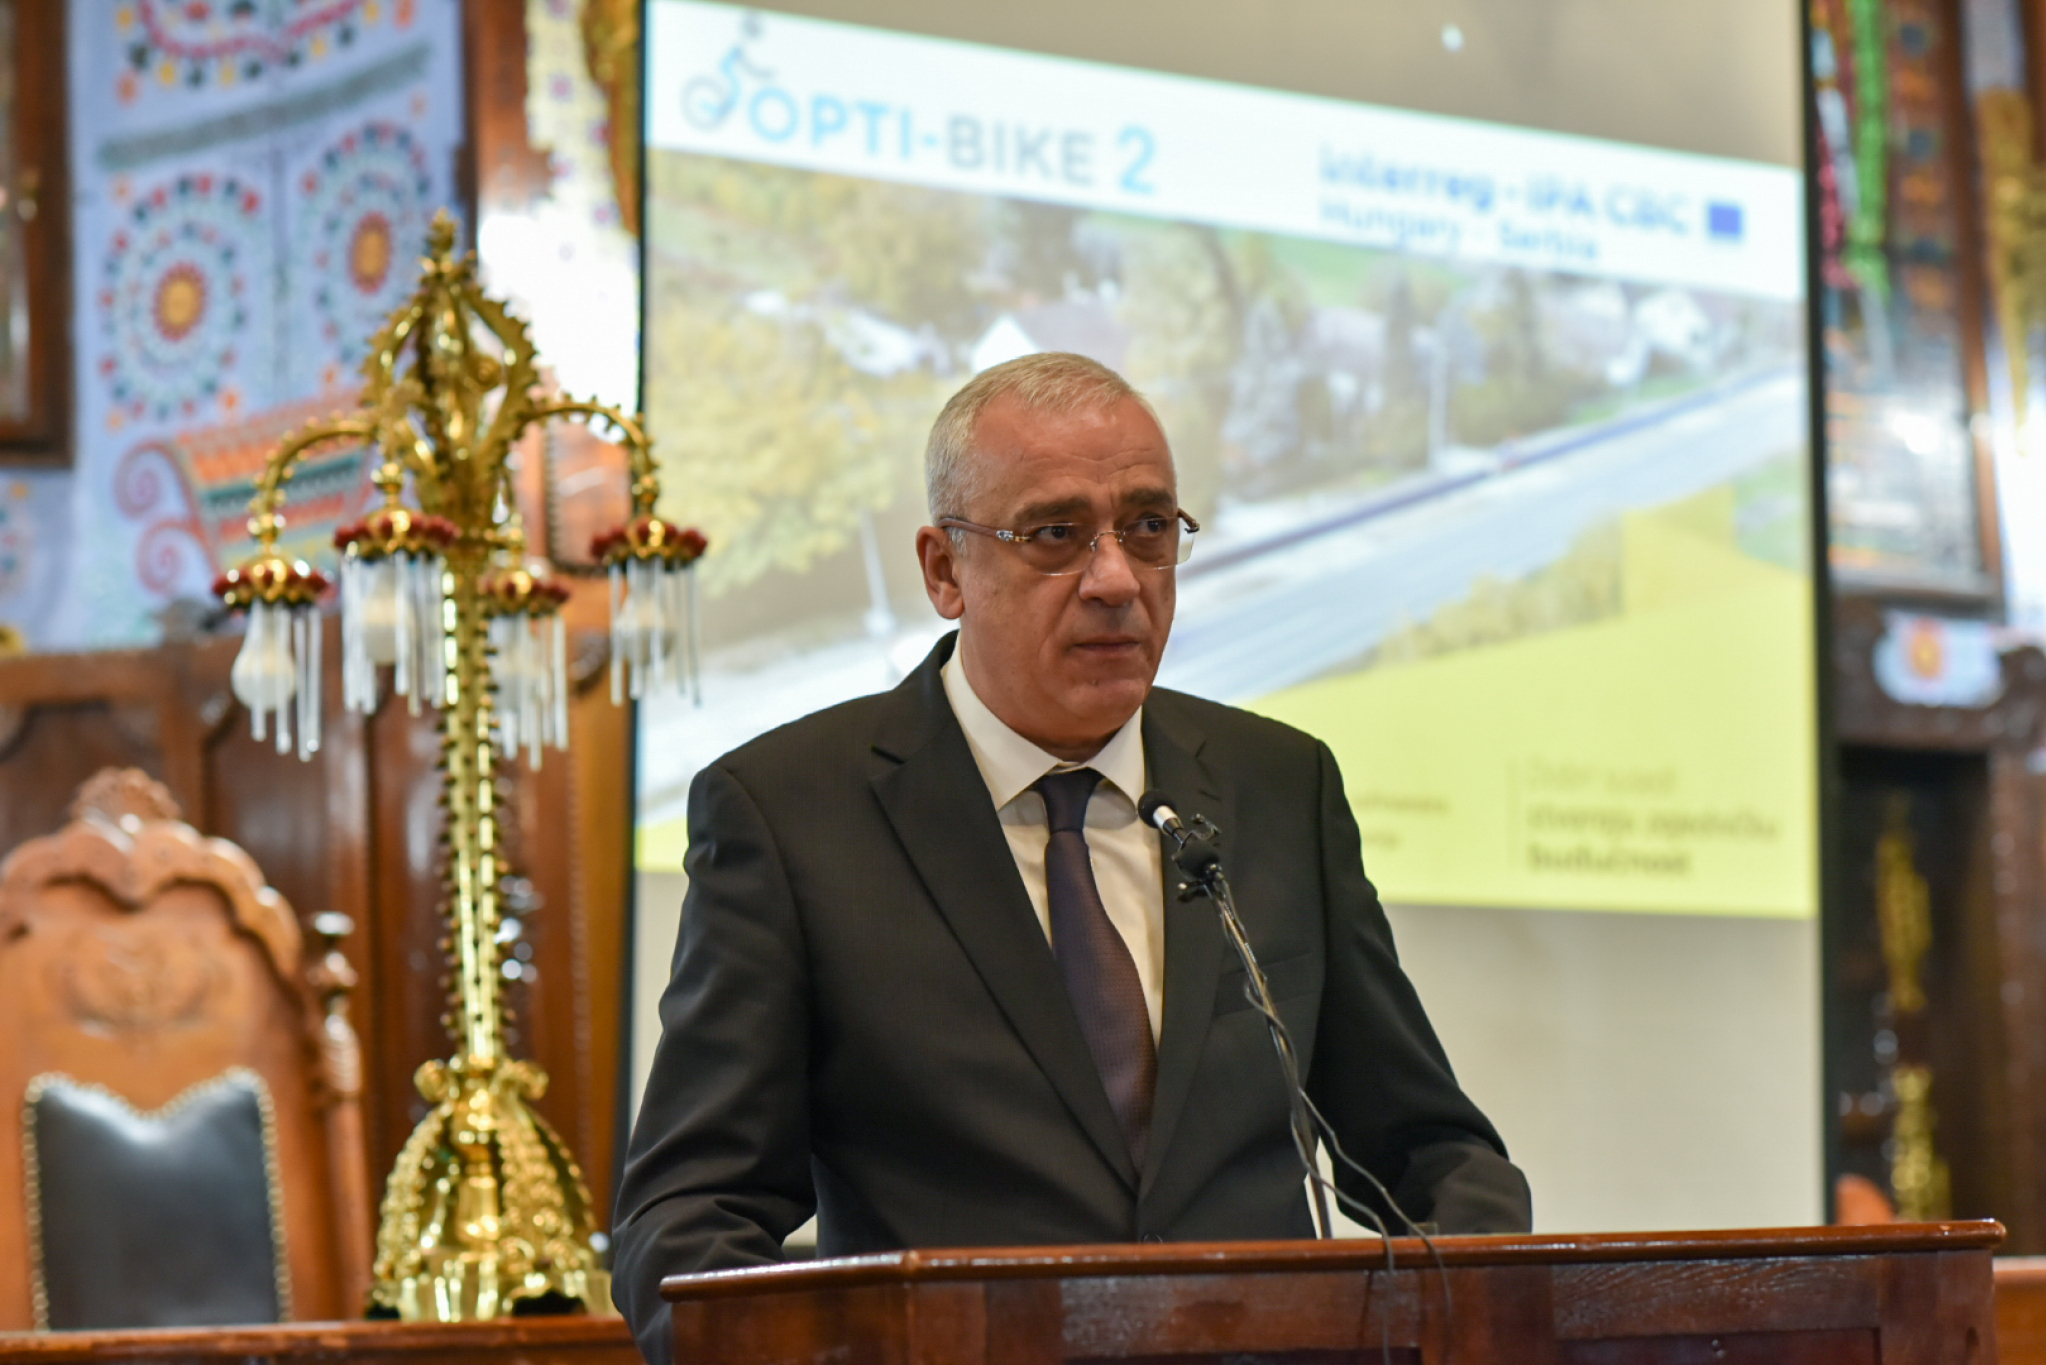 PROJKAT VREDAN VIŠE OD POLA MILIONA EVRA Obratio se gradonačelnik Bakić na završnoj konferenciji „Opti-bajk 2“ (FOTO)